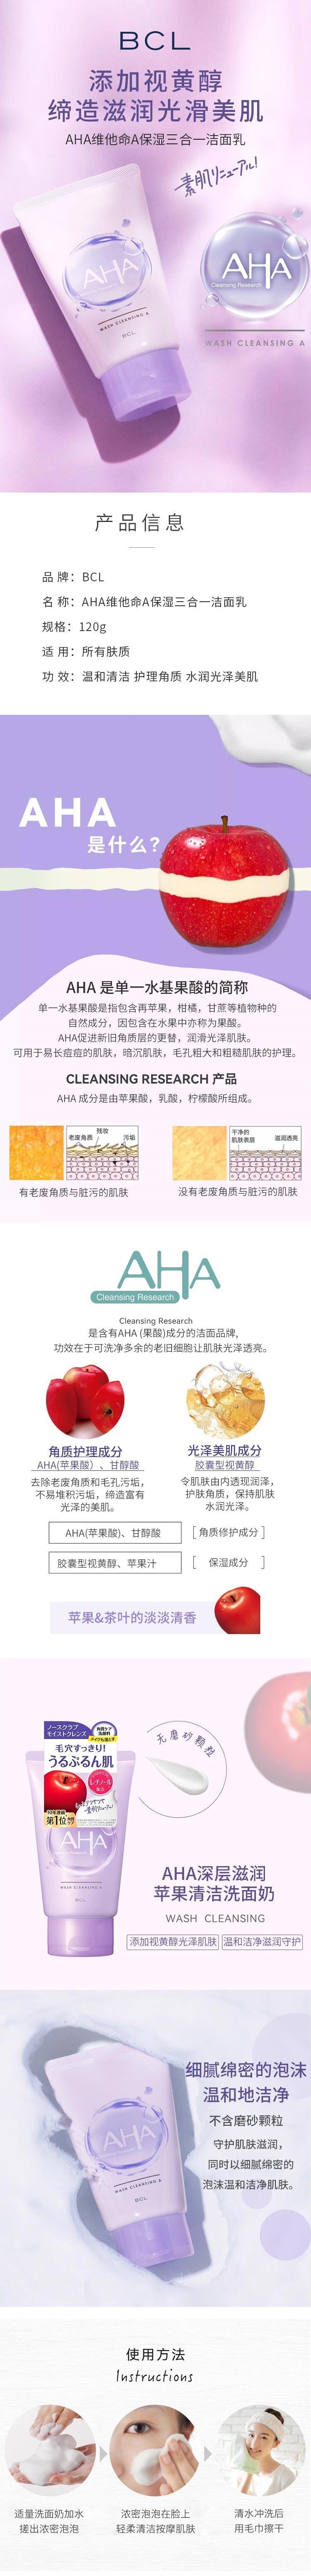 【日本直邮】BCL AHA VA果酸温和卸妆洁面乳 苹果&茶香型 120g